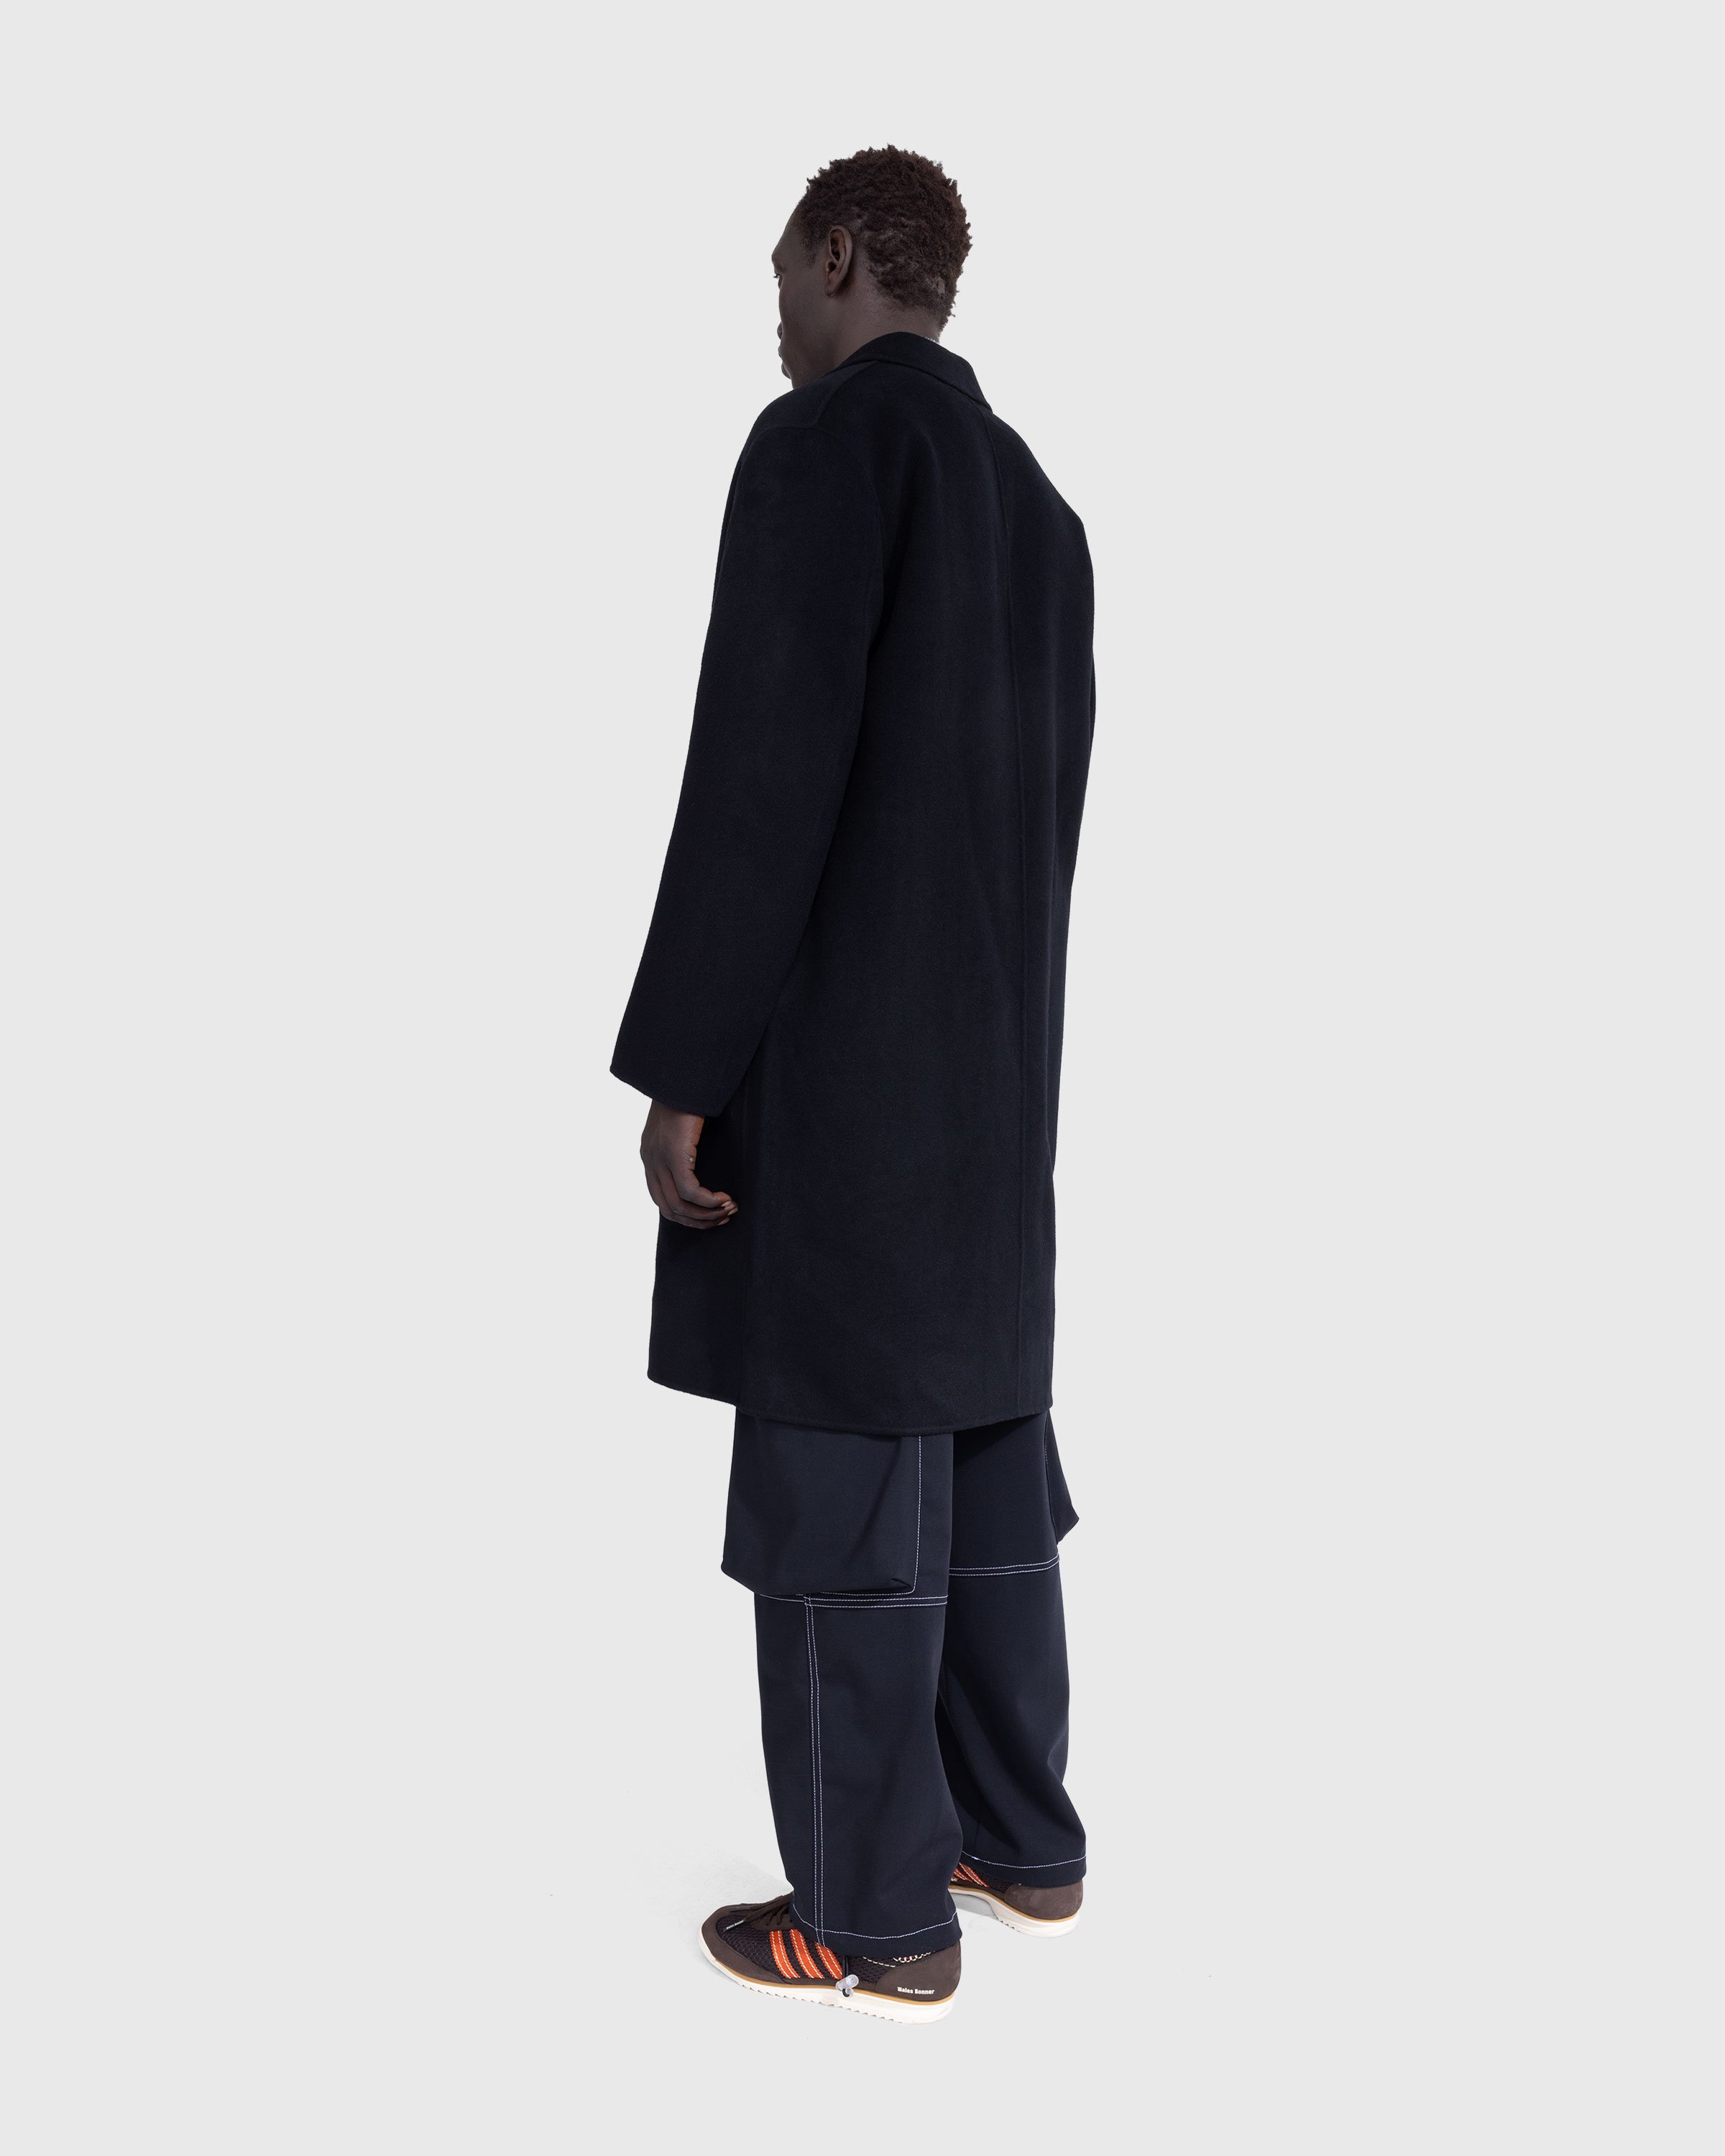 Acne Studios - Single-Breasted Coat Black - Clothing - Black - Image 3